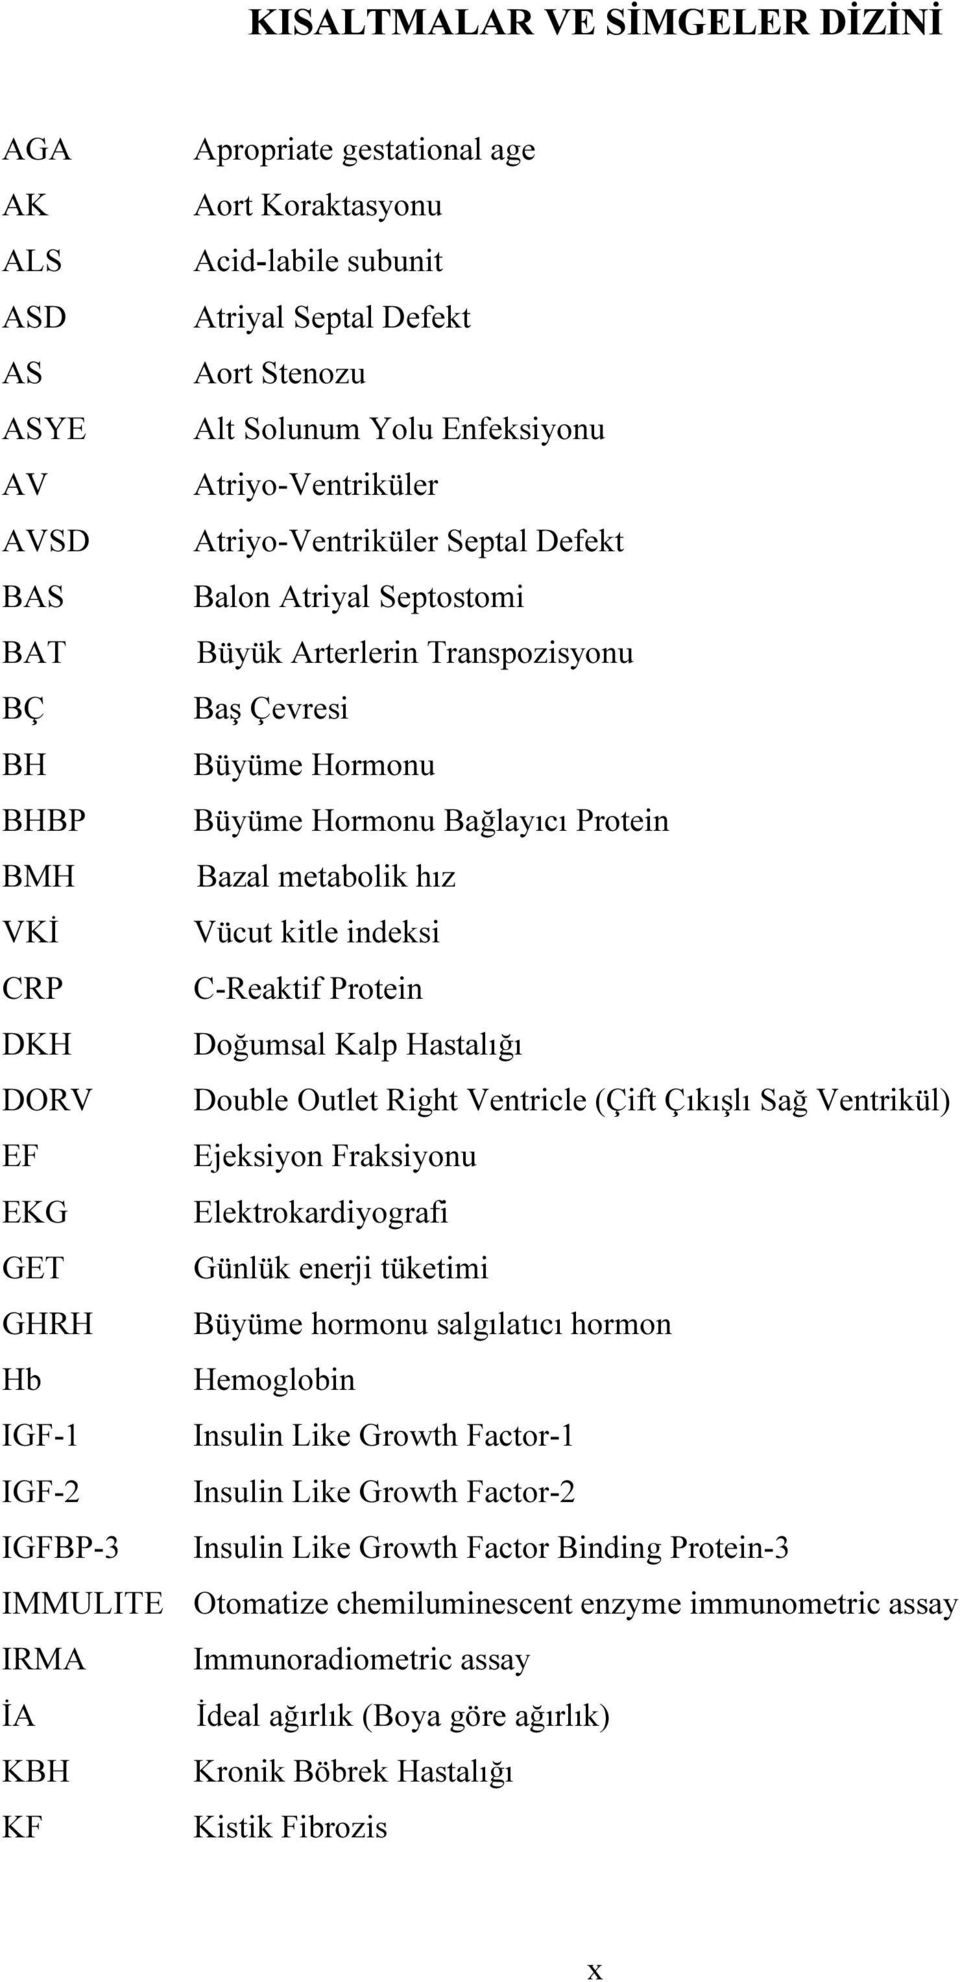 Bazal metabolik hız VKİ Vücut kitle indeksi CRP C-Reaktif Protein DKH Doğumsal Kalp Hastalığı DORV Double Outlet Right Ventricle (Çift Çıkışlı Sağ Ventrikül) EF Ejeksiyon Fraksiyonu EKG